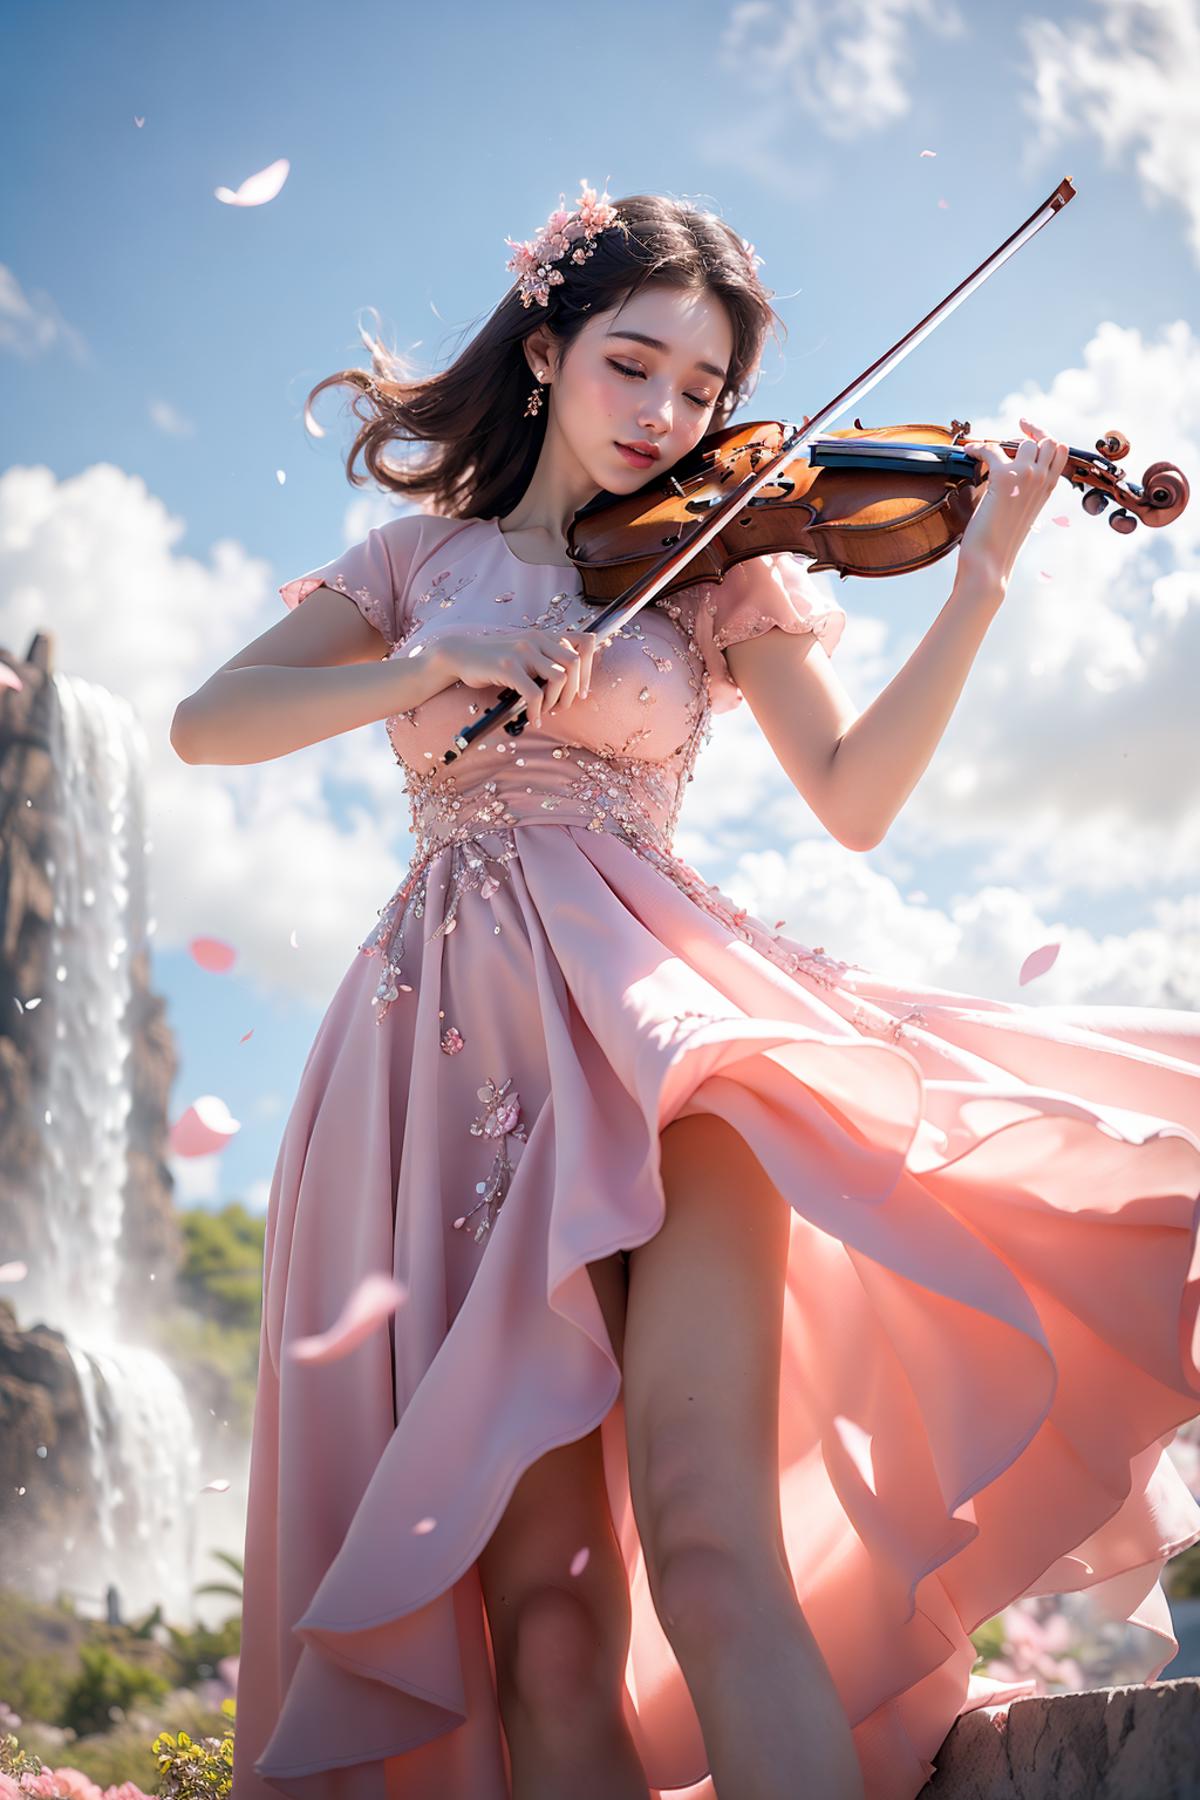 绪儿-小提琴 violin image by Darknoice